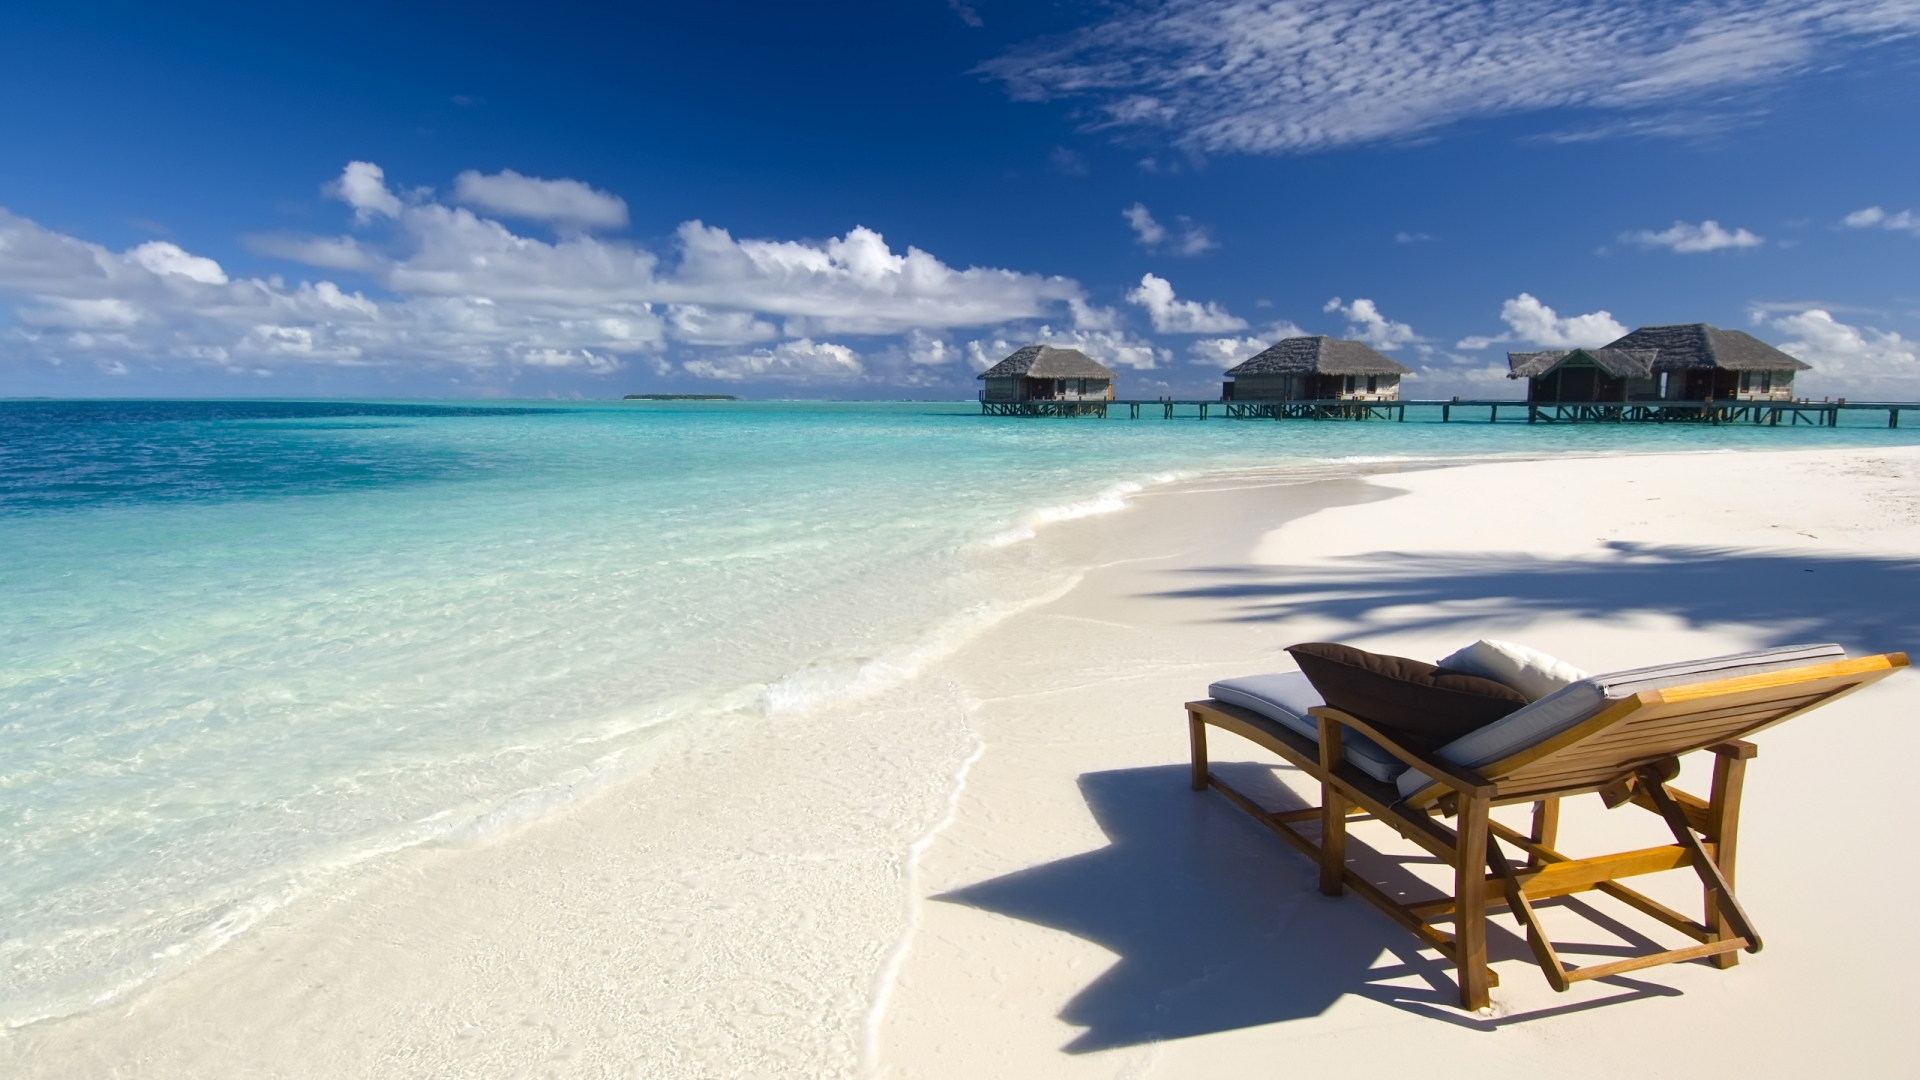 Maldives Conrad Beach for 1920 x 1080 HDTV 1080p resolution